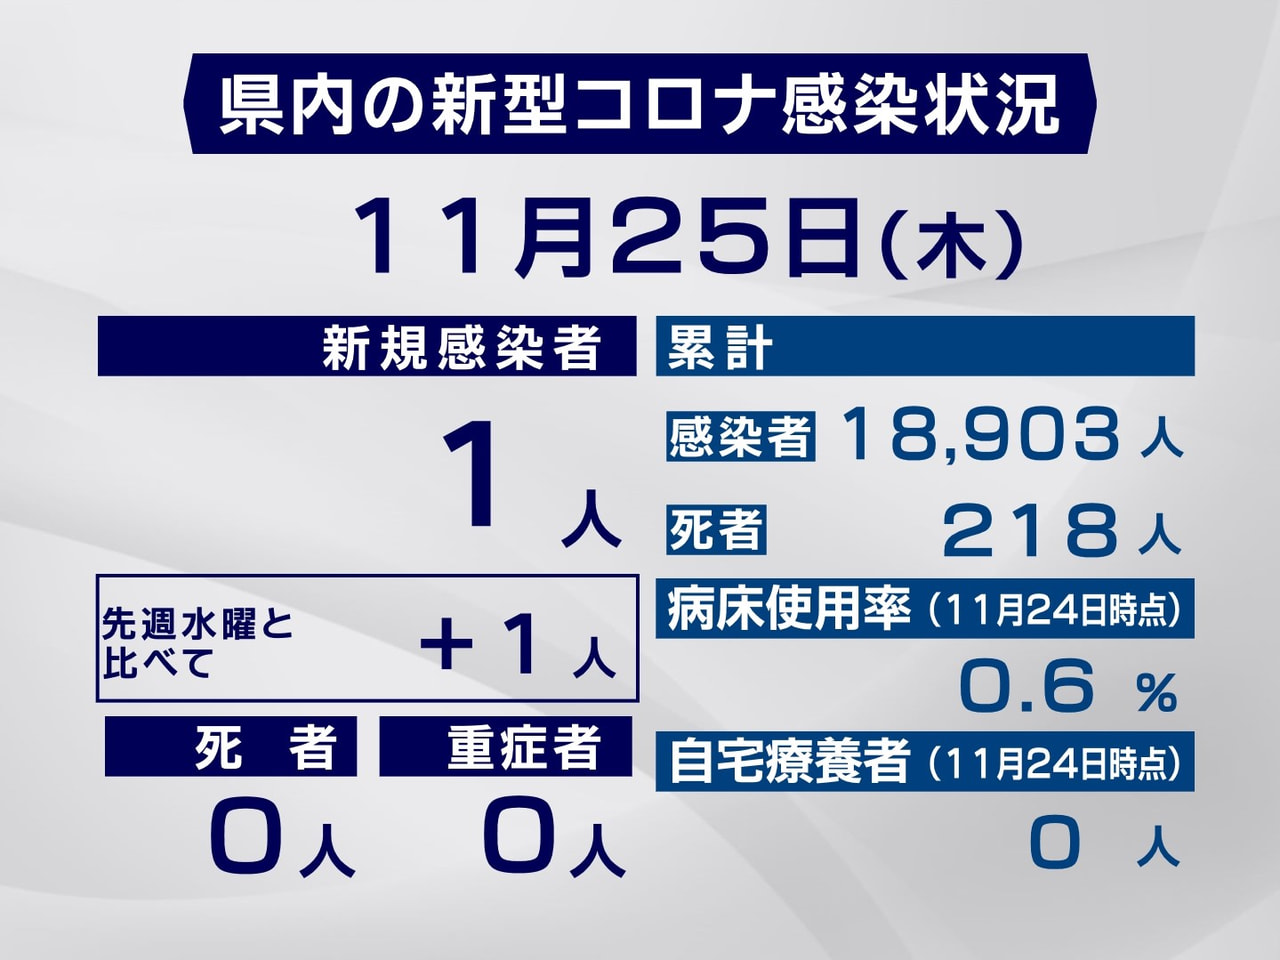 岐阜県は、２５日、新型コロナウイルスの感染が新たに１人確認されたと発表しました。...